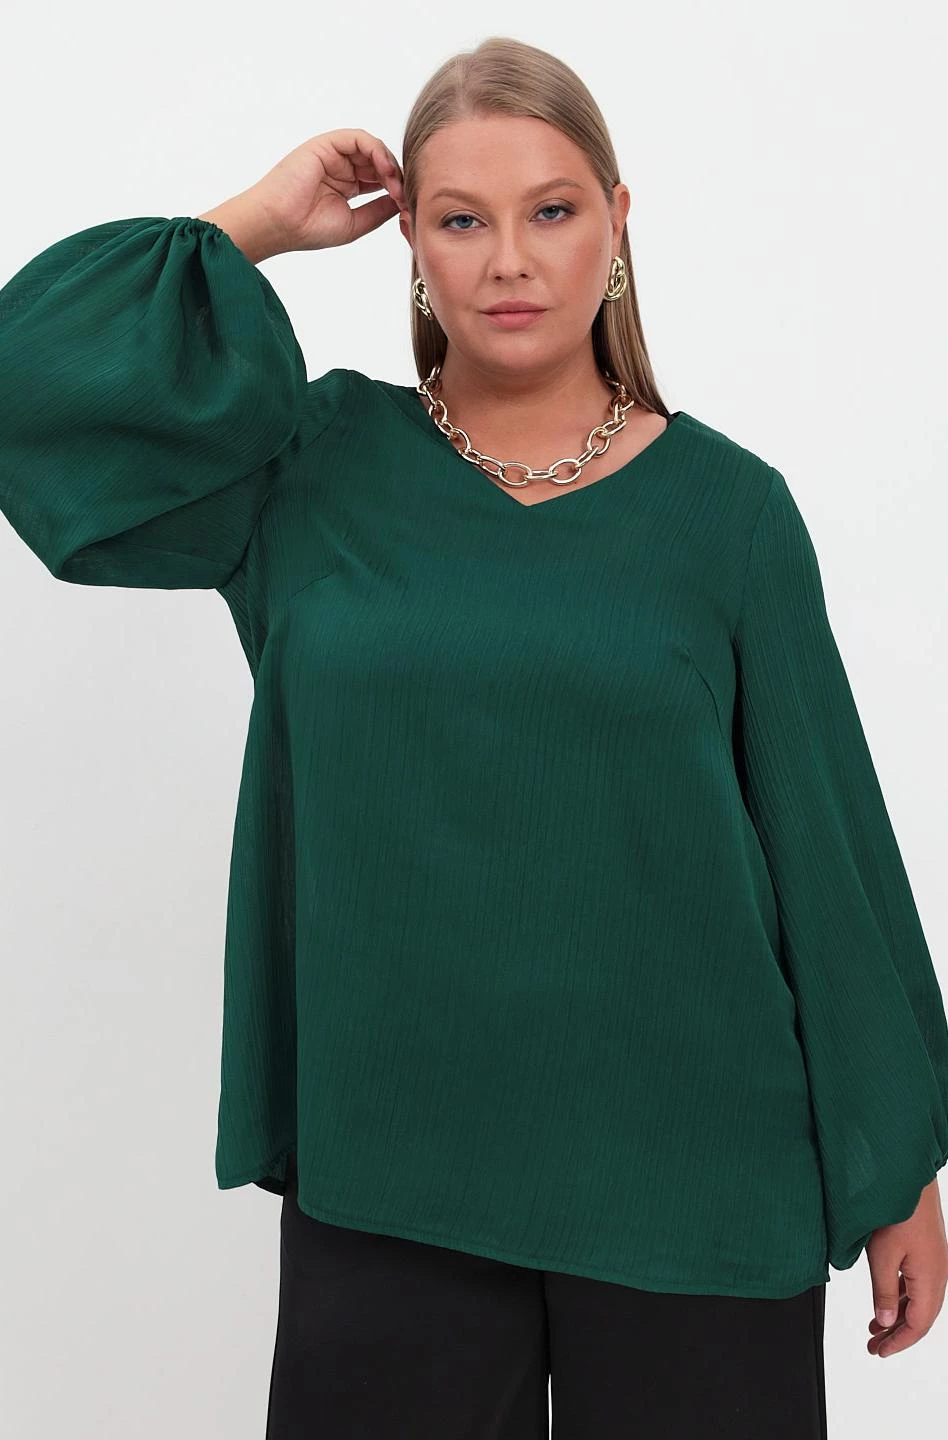 Струящаяся зеленая блузка с V-вырезом из жатого шифона